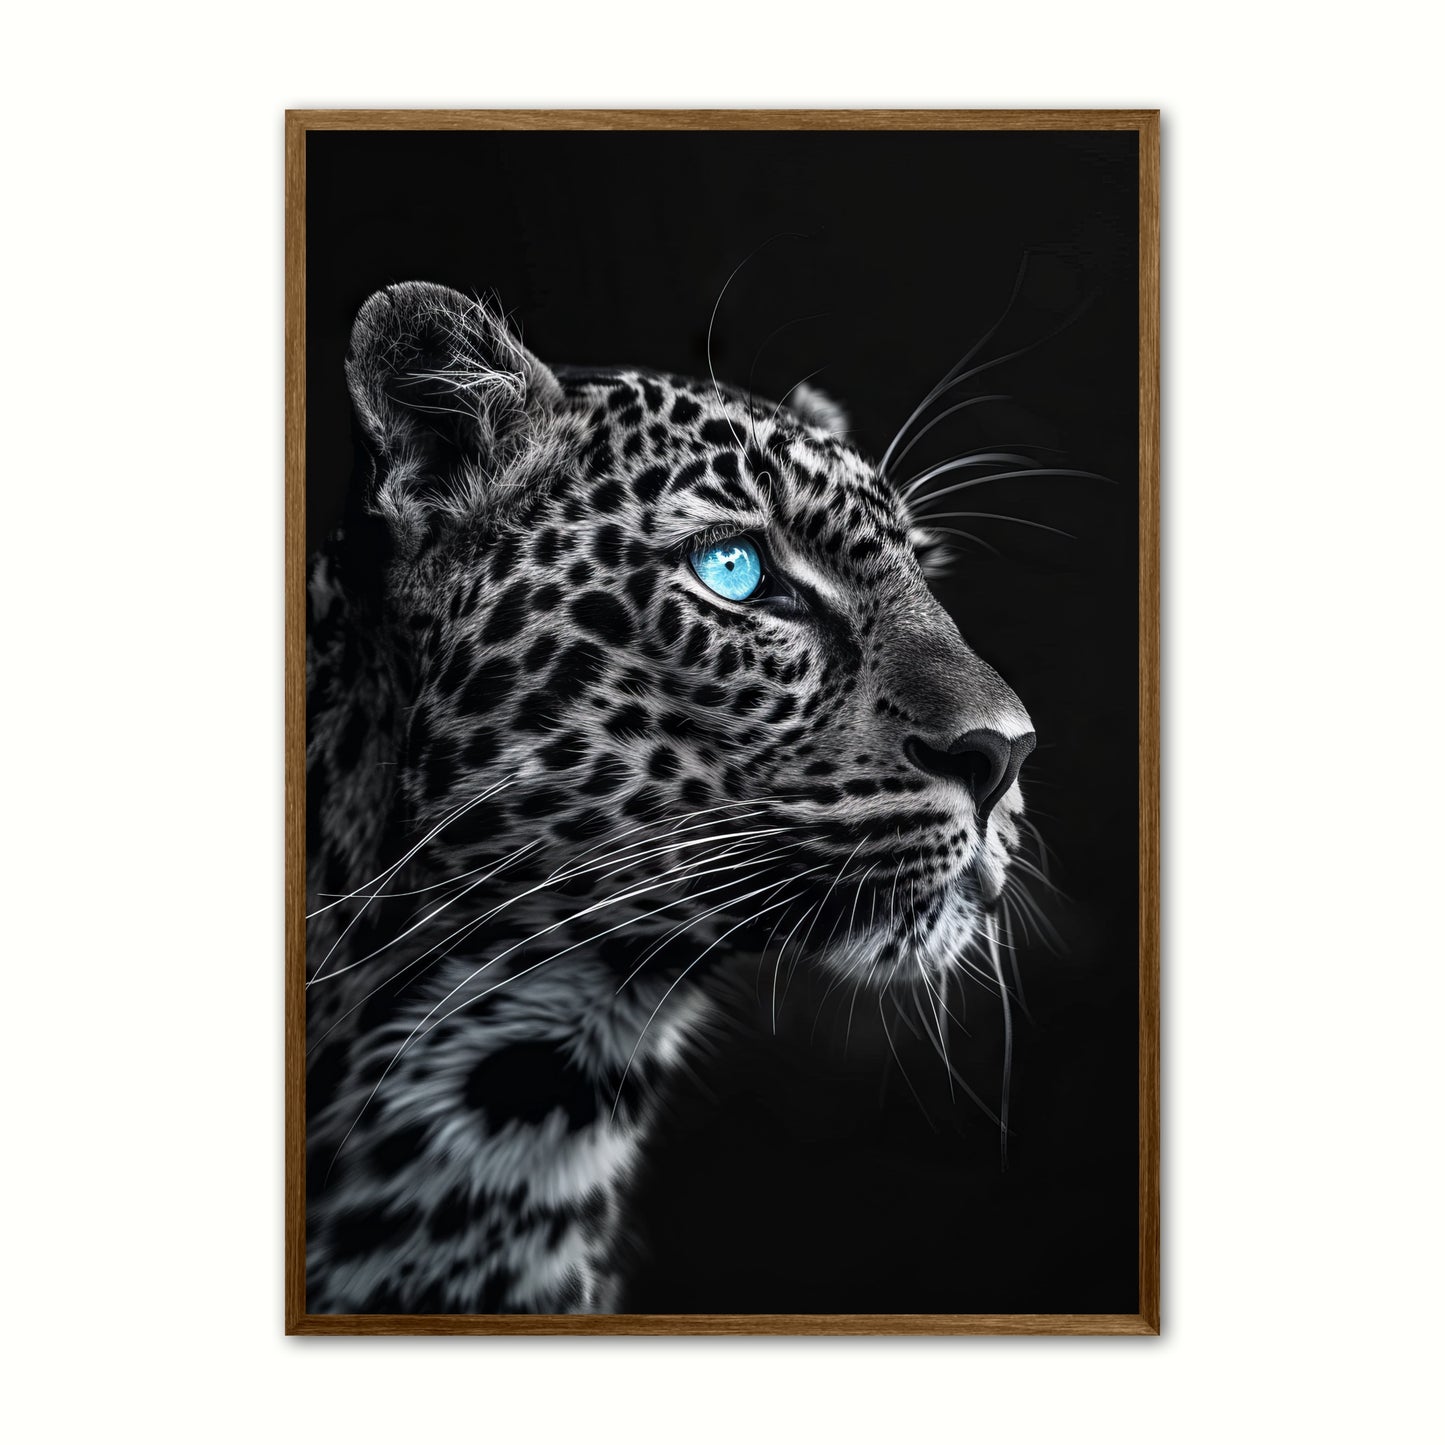 Blue Eyes 15 - Leopard